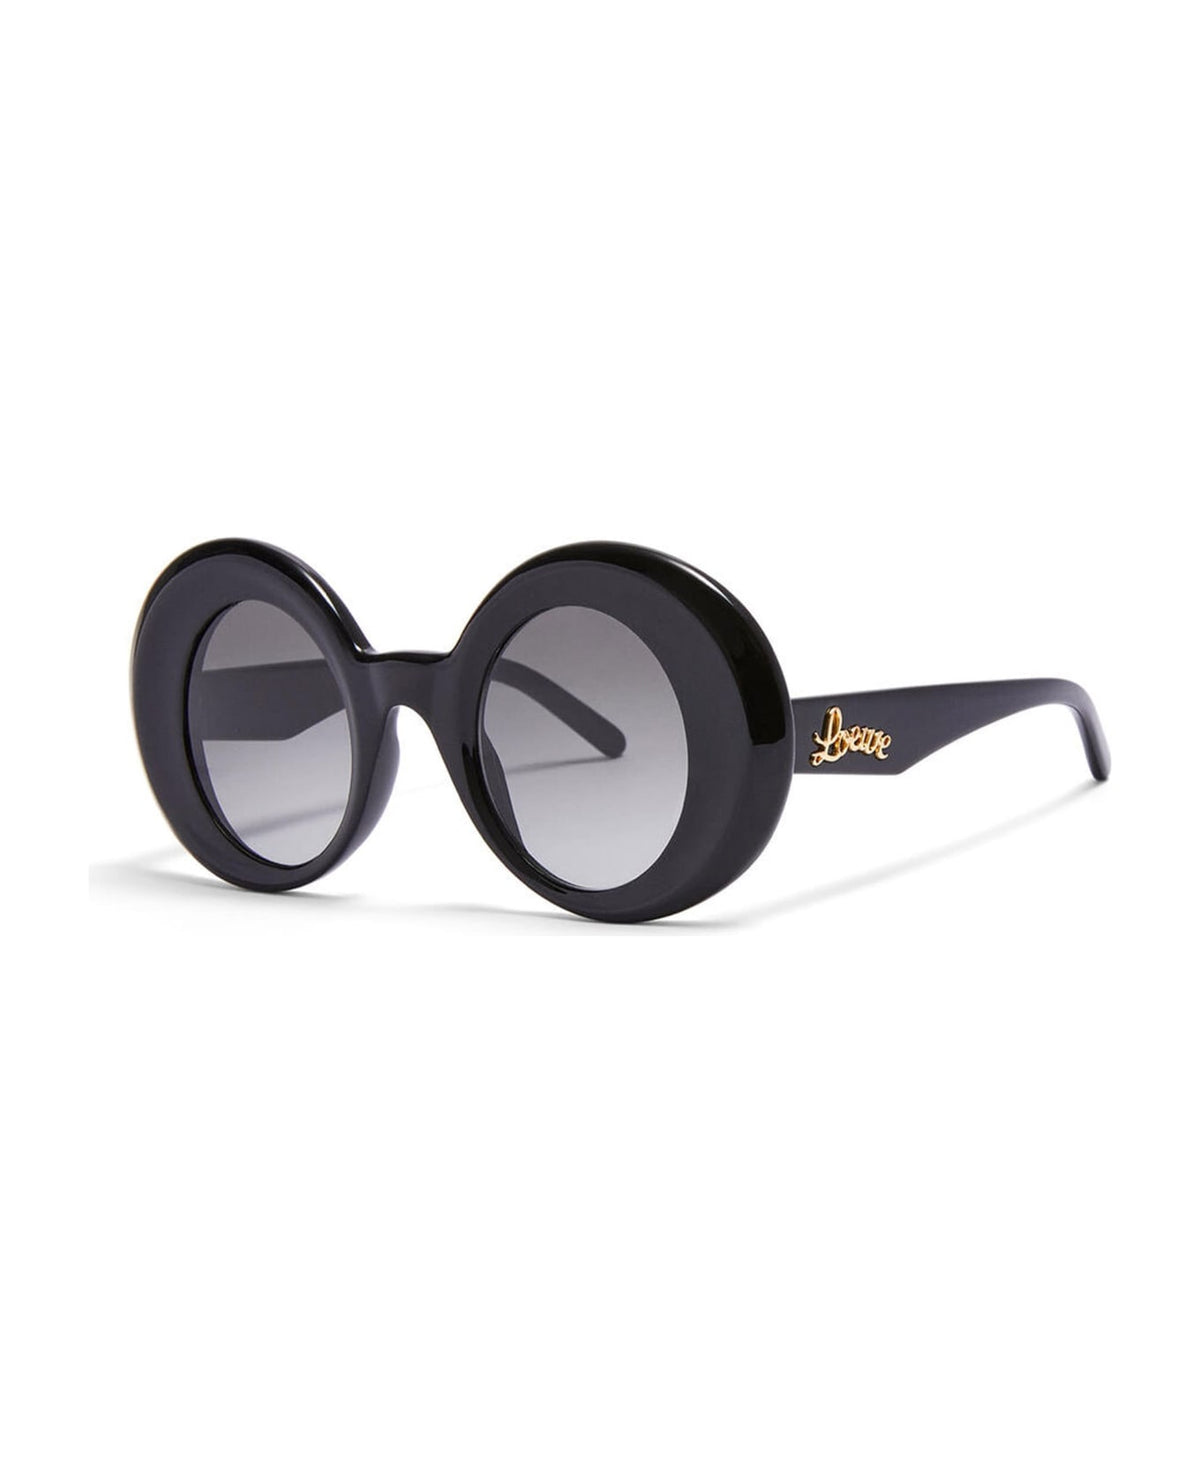 Lw40089i - Black Sunglasses